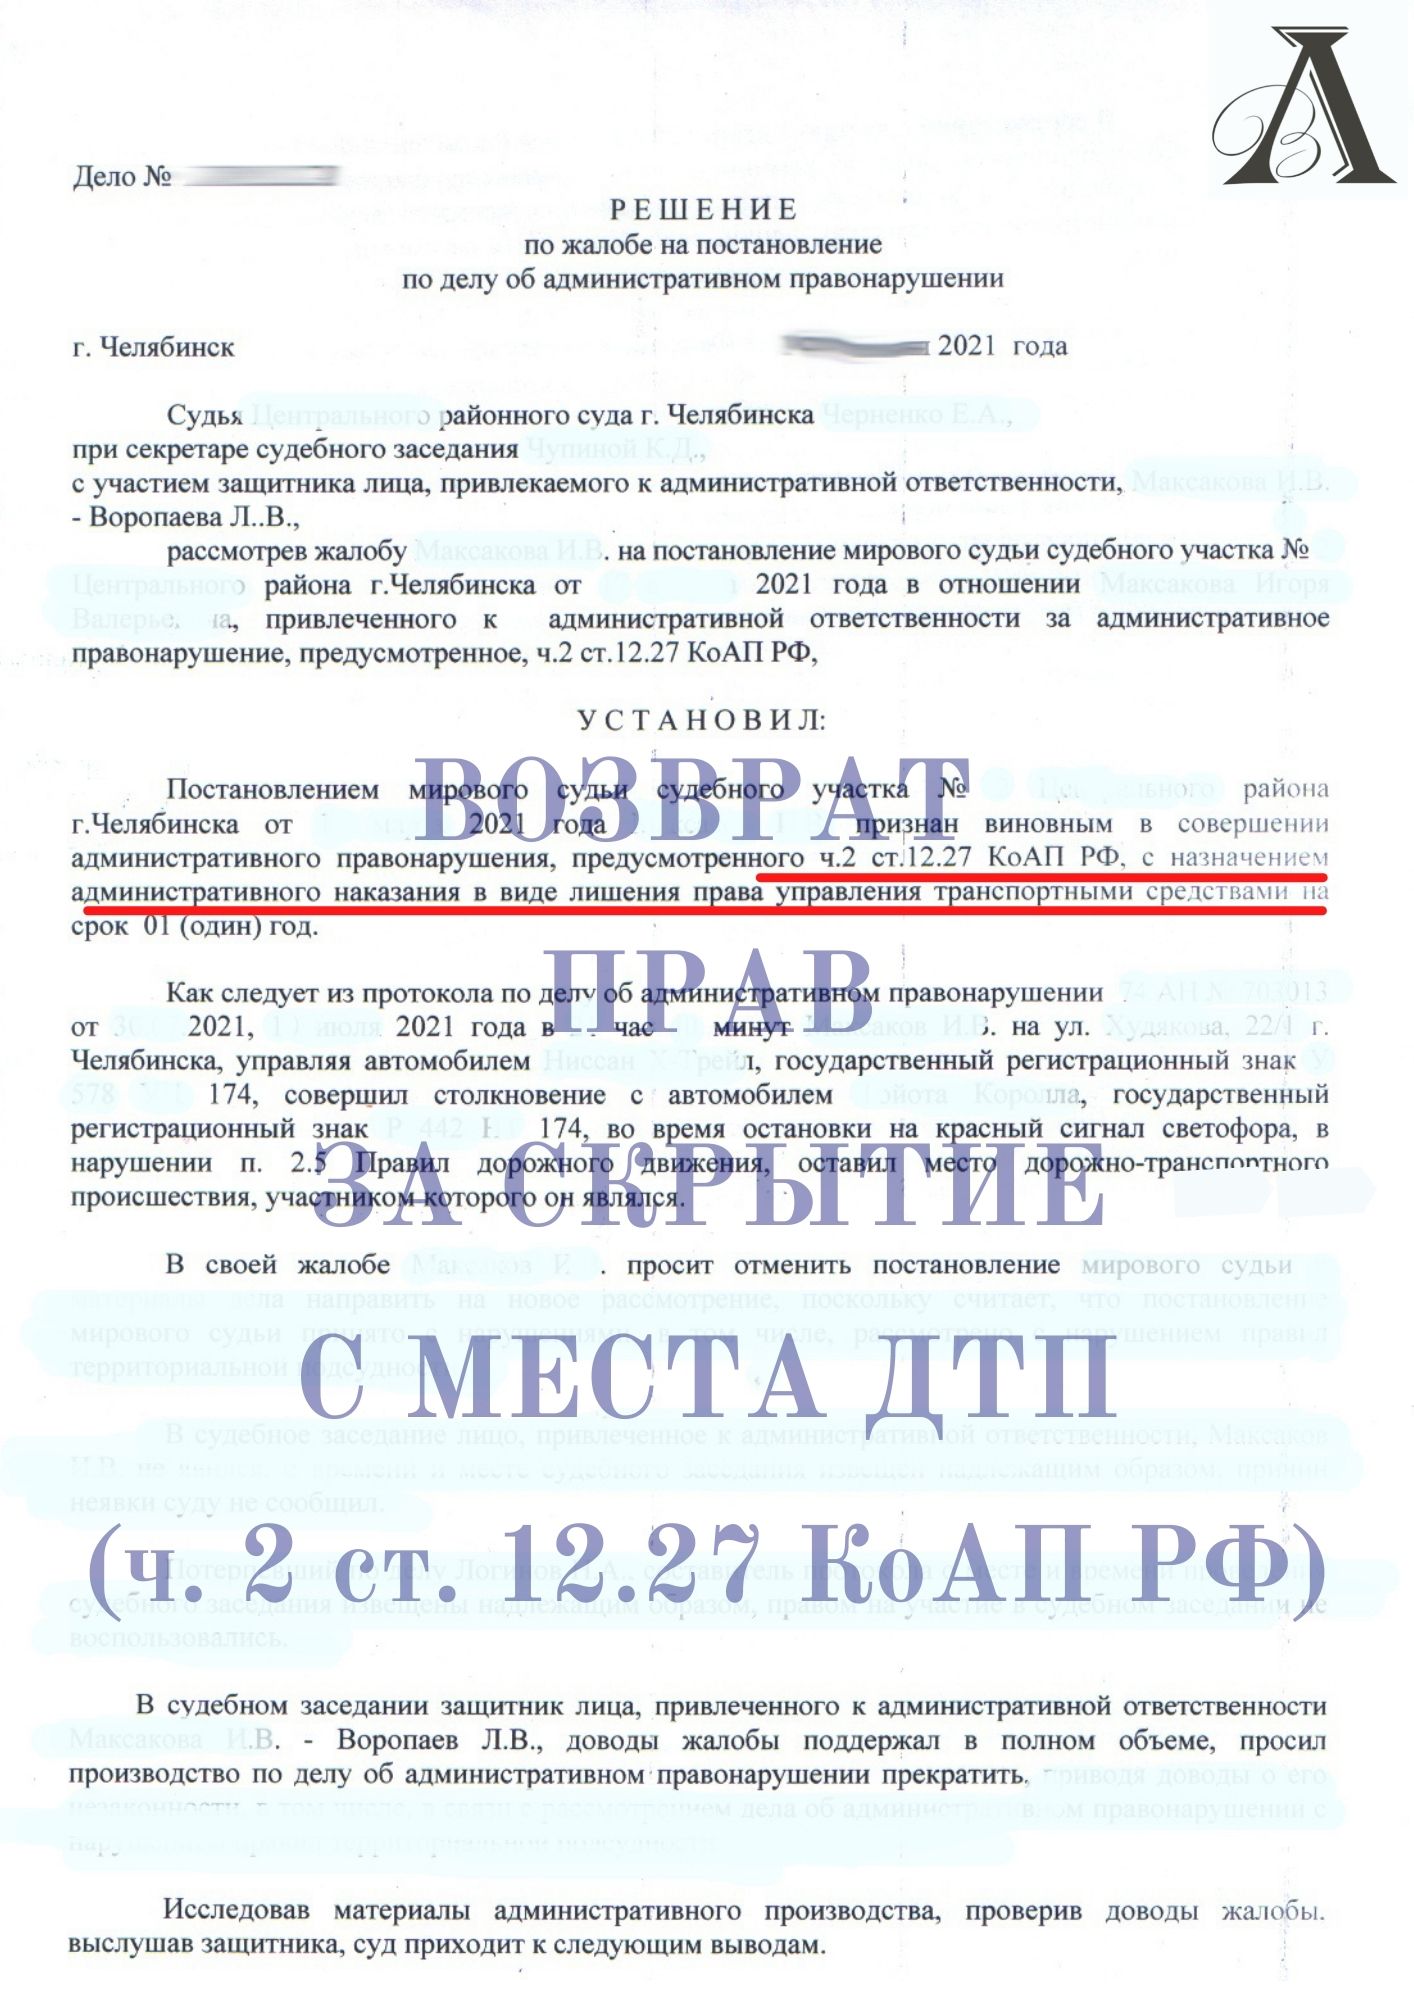 Вернули права за скрытие с места ДТП (ч. 2 ст. 12.27 КоАП РФ)